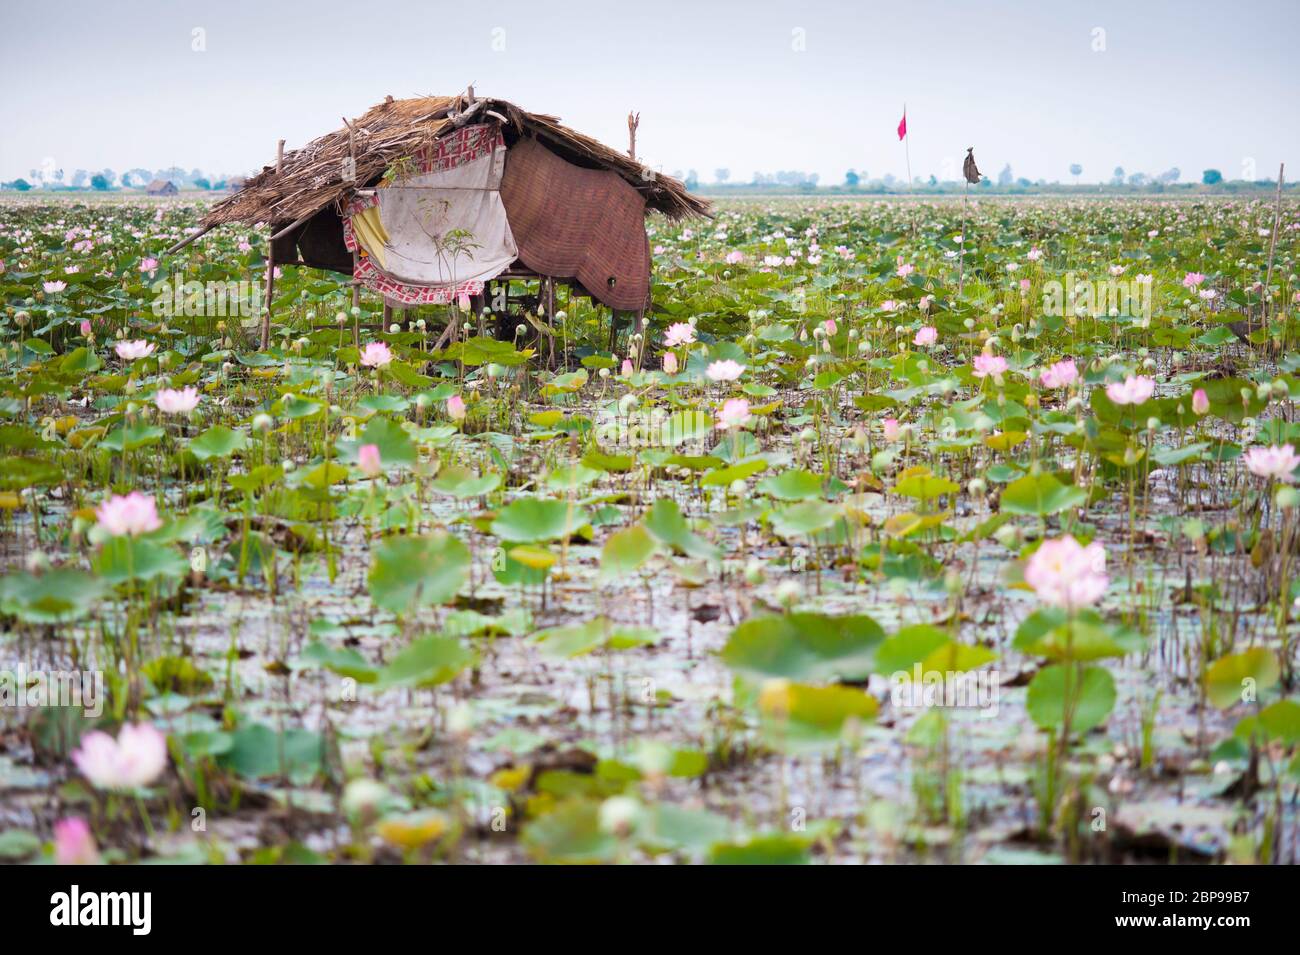 Los trabajadores se casan en una granja de flores de loto, Camboya central, sudeste de Asia Foto de stock